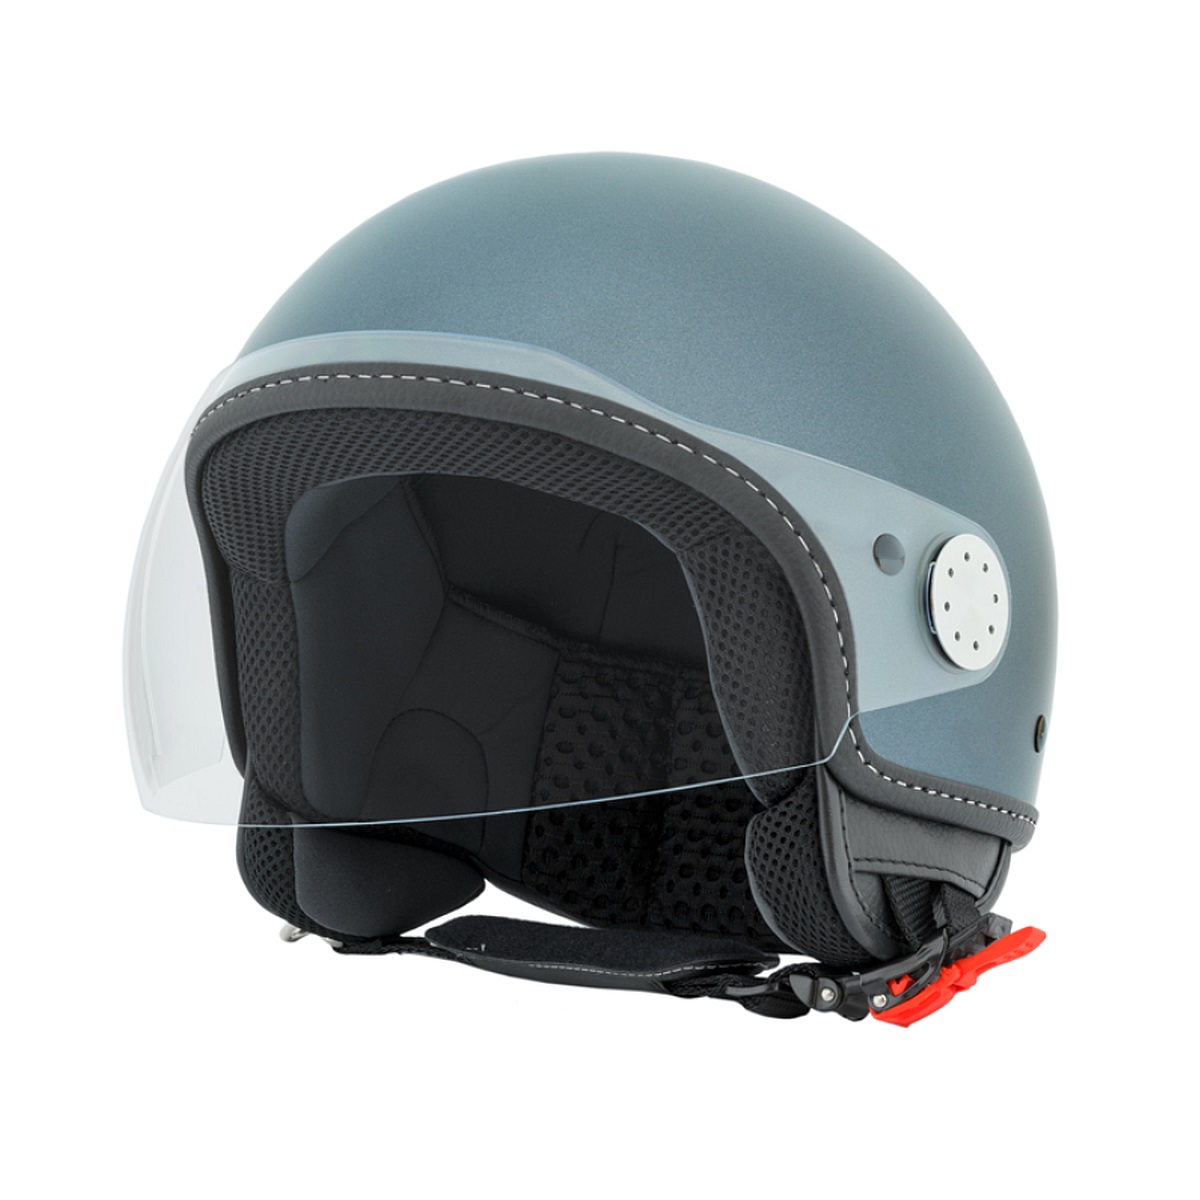 Jet Helm  VESPA  VISOR 2 0 Helme Bekleidung und Zubeh r 